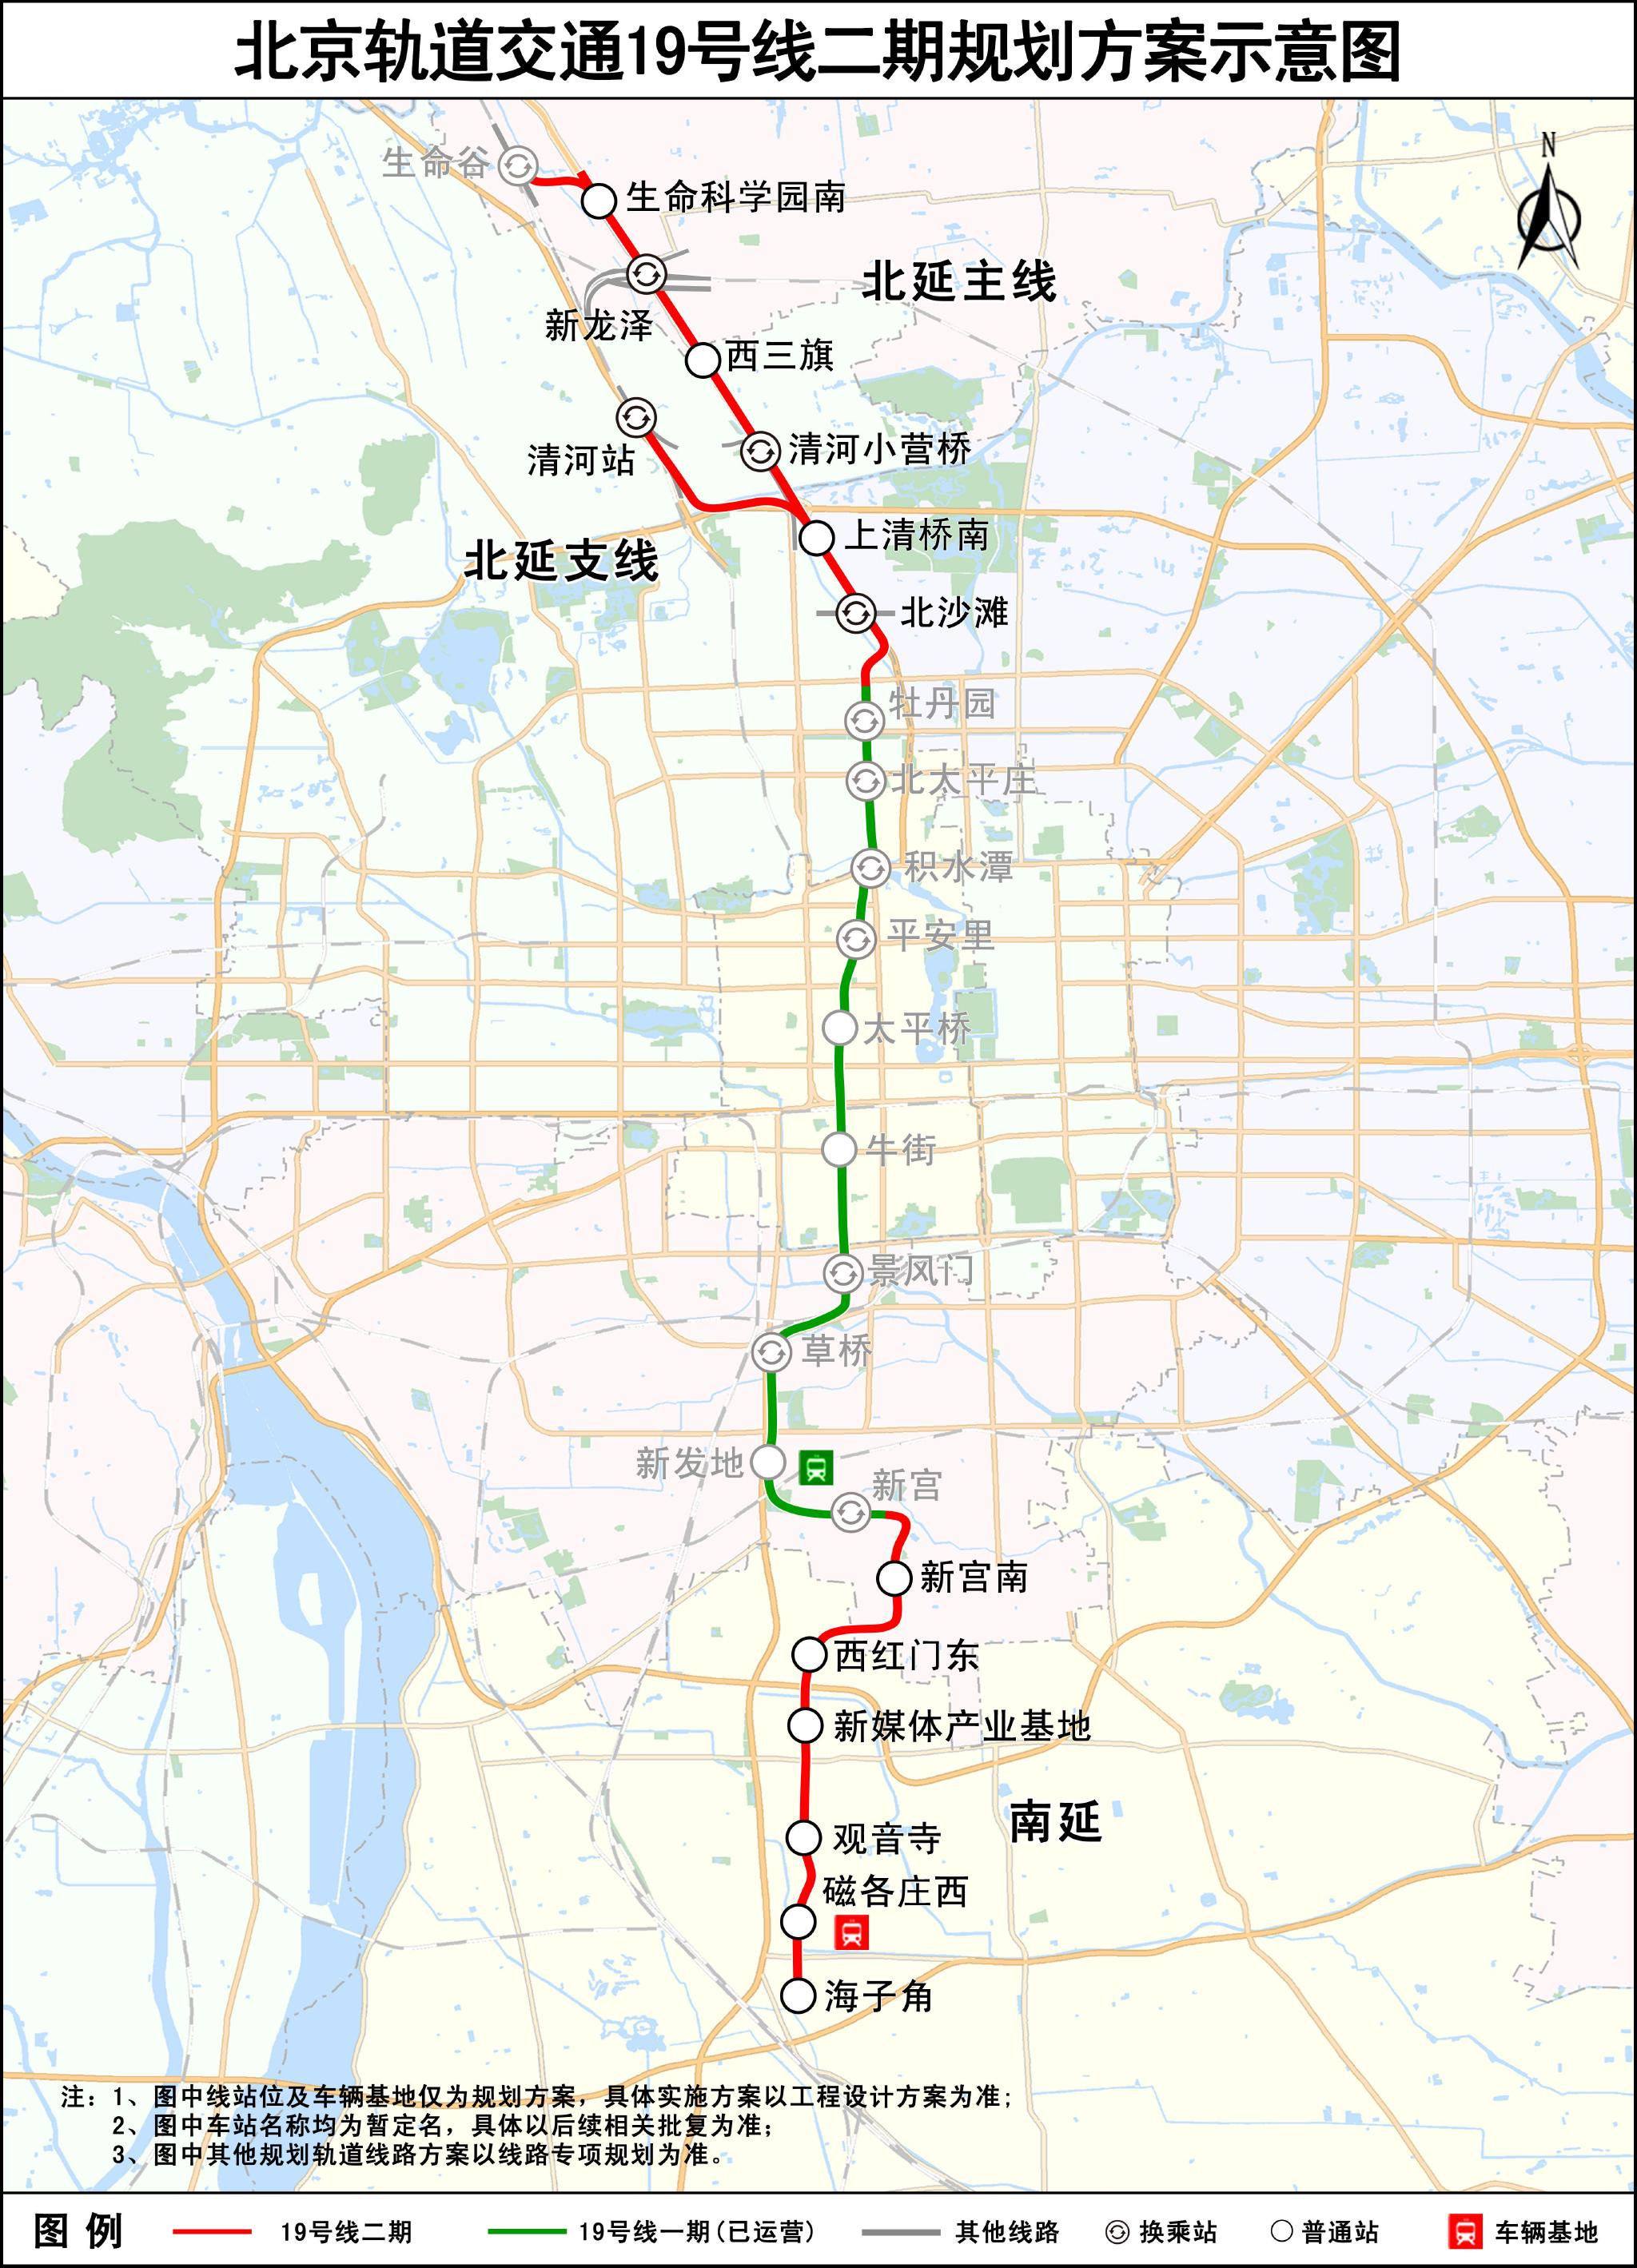 北京軌道交通19號線二期規劃方案示意圖。圖片來自北京市基礎設施投資有限公司官網